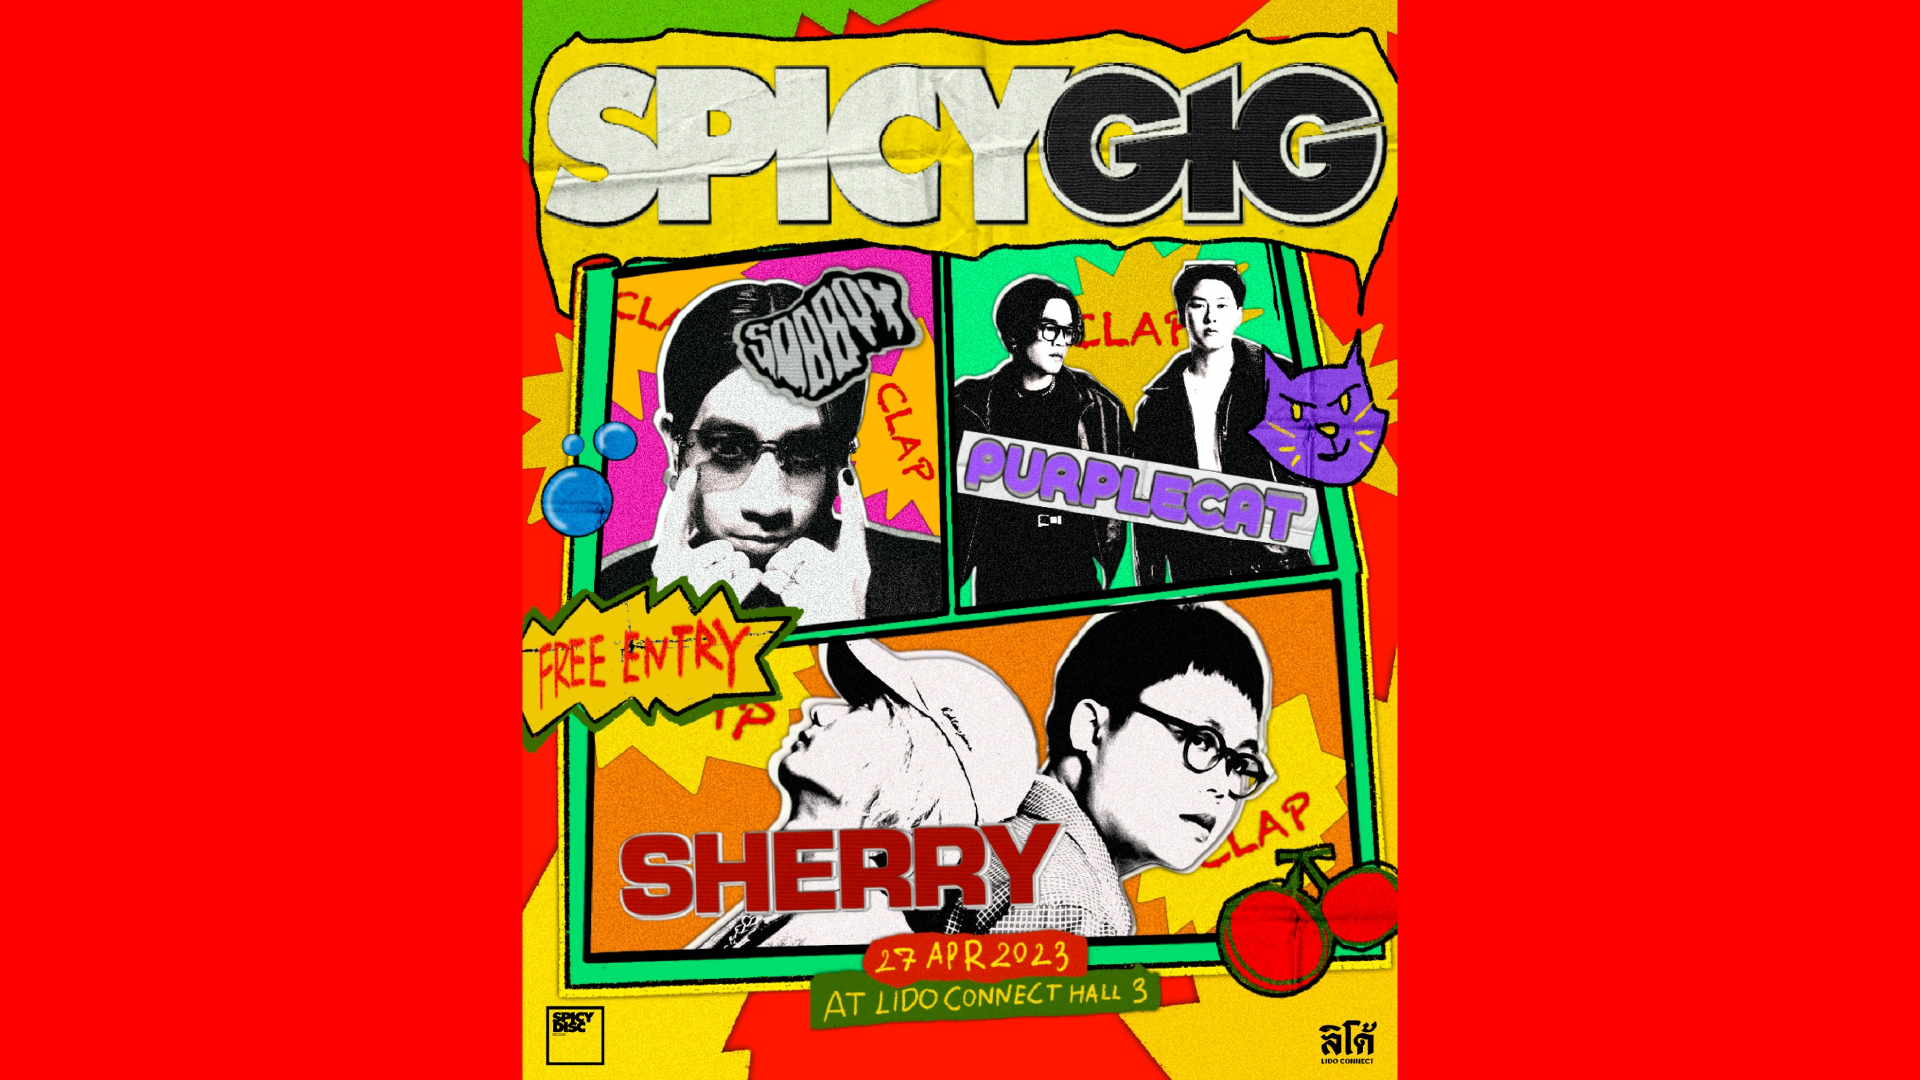 SPICYDISC ชวนทุกคนมาปล่อยจอยกับ 3 น้องใหม่ ‘SHERRY - SOBBOY- Purplecat’ ในคอนเสิร์ต ‘SPICY GIG’ 27 เม.ย. นี้!